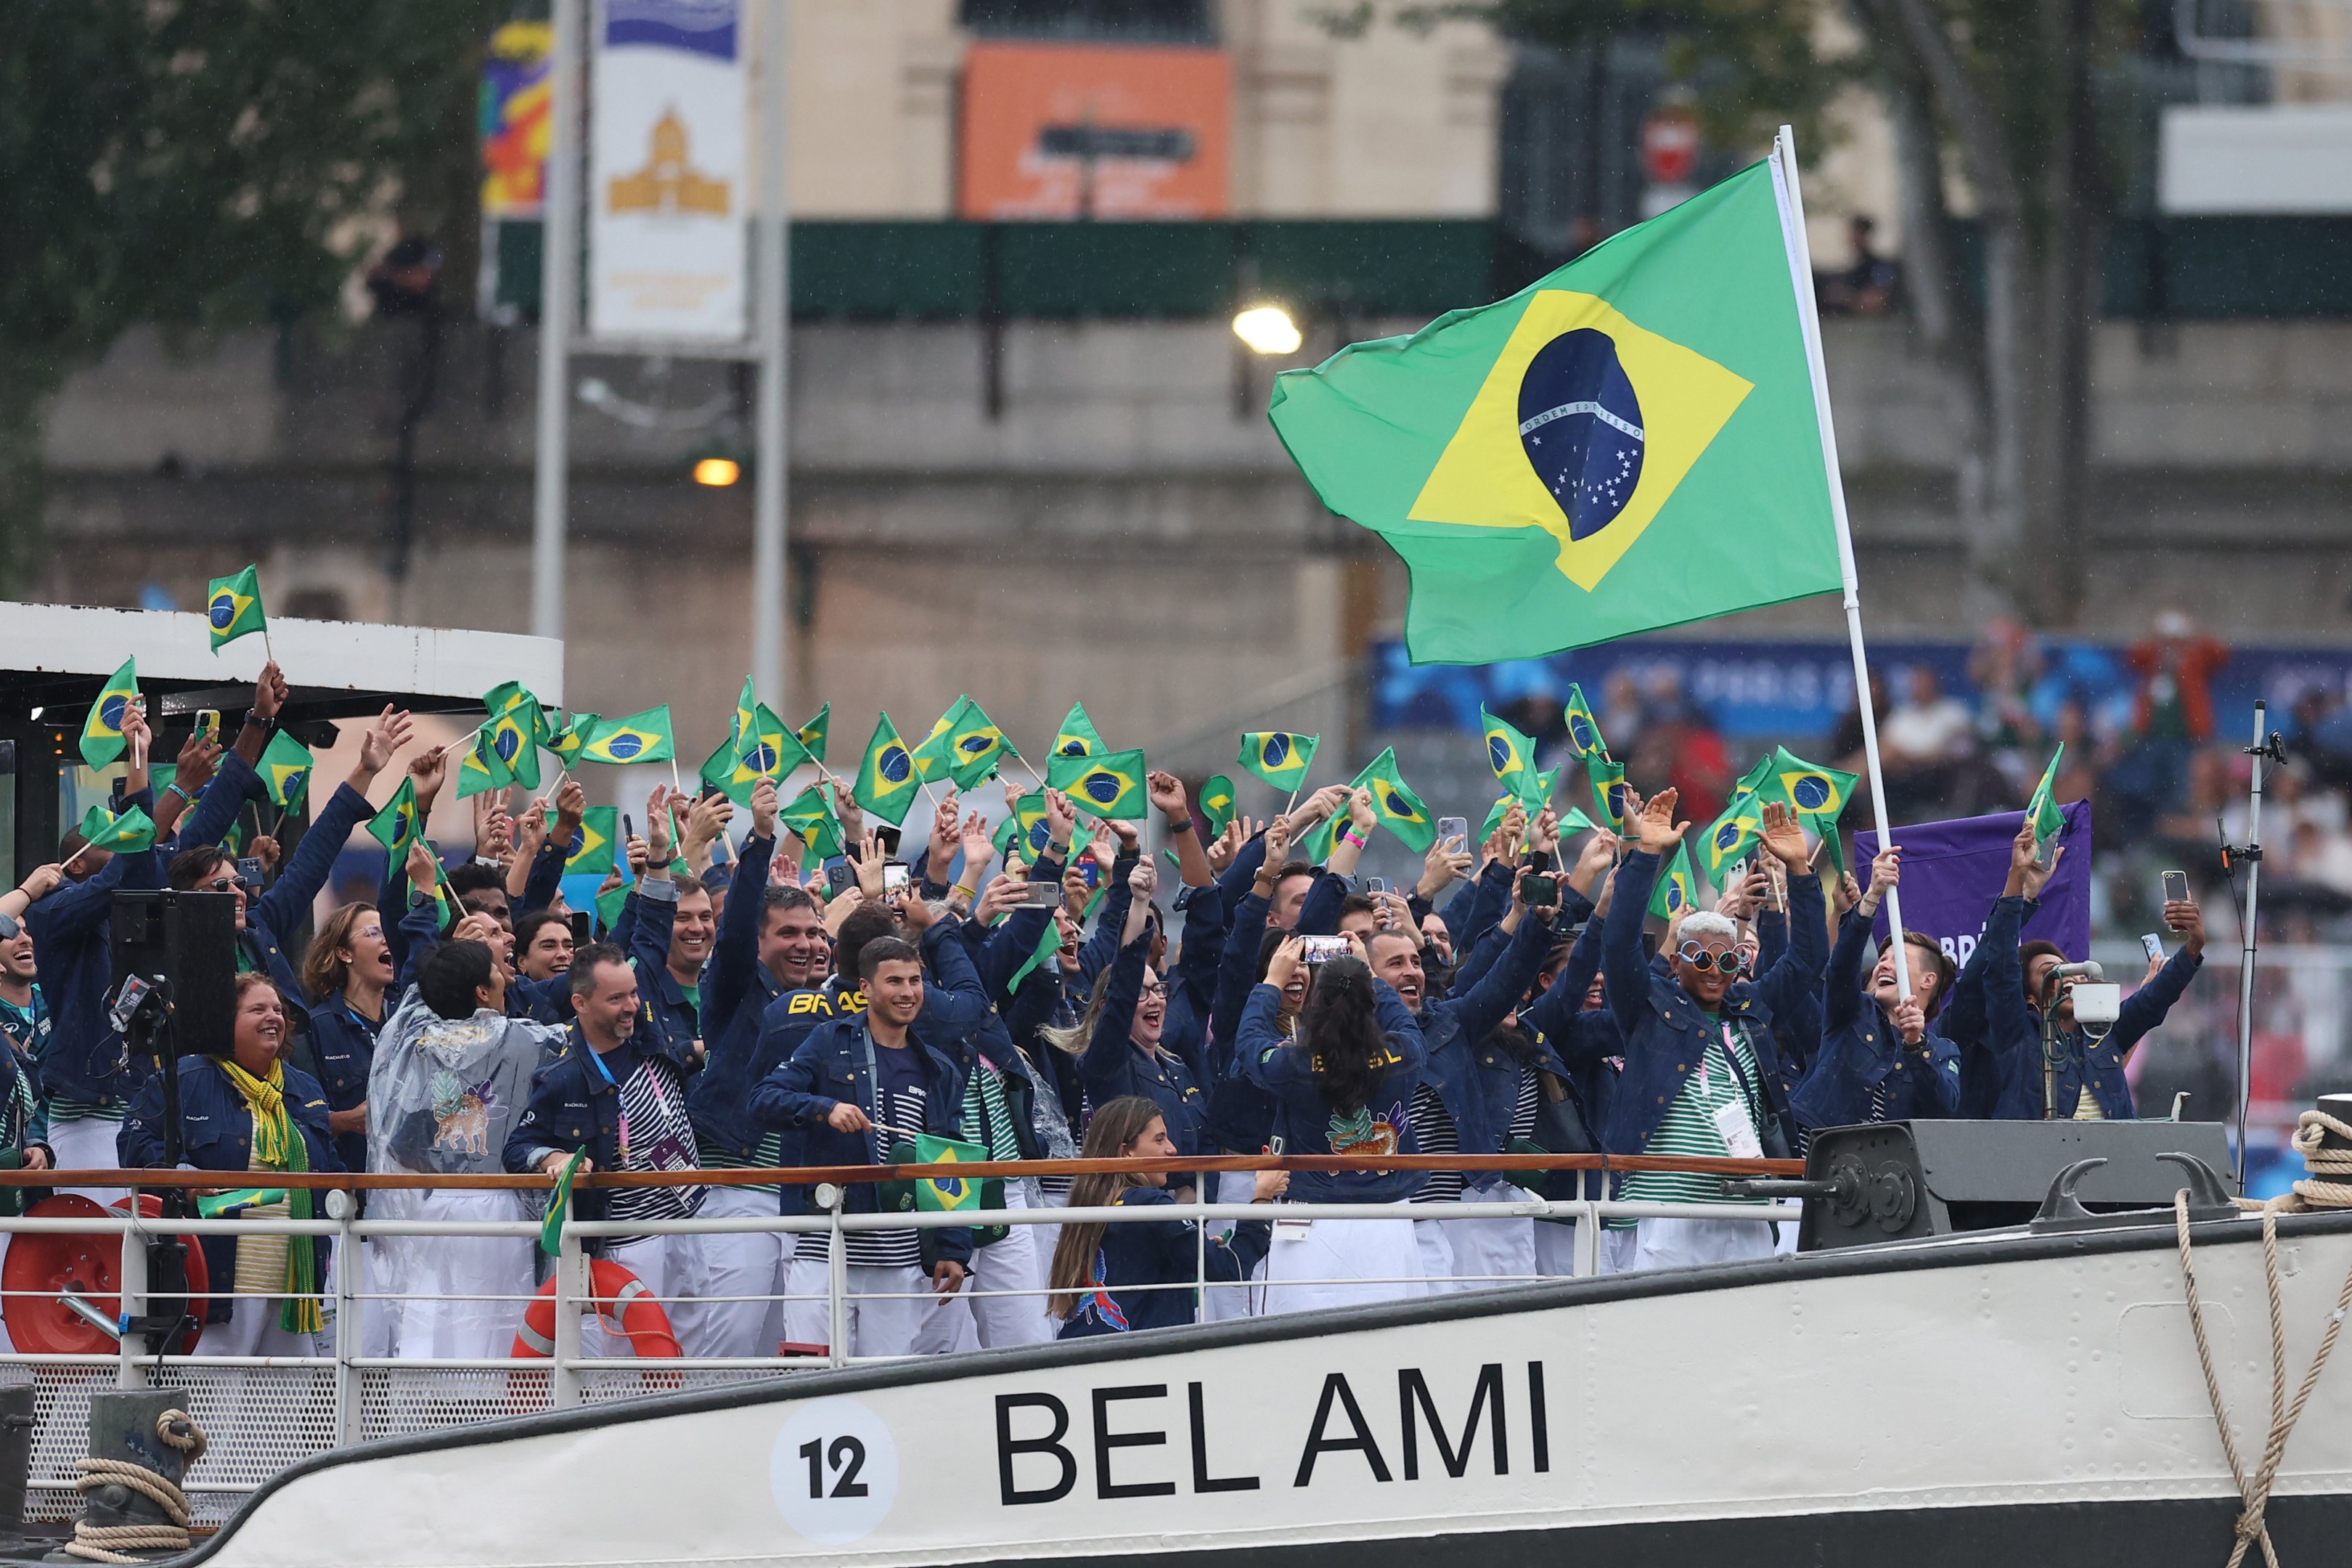 Isaquias Guimarães Queiroz e Raquel Kochhann, porta-bandeiras do Time Brasil, agitam sua bandeira enquanto são vistos em um barco no Rio Sena durante a cerimônia de abertura dos Jogos Olímpicos Paris 2024